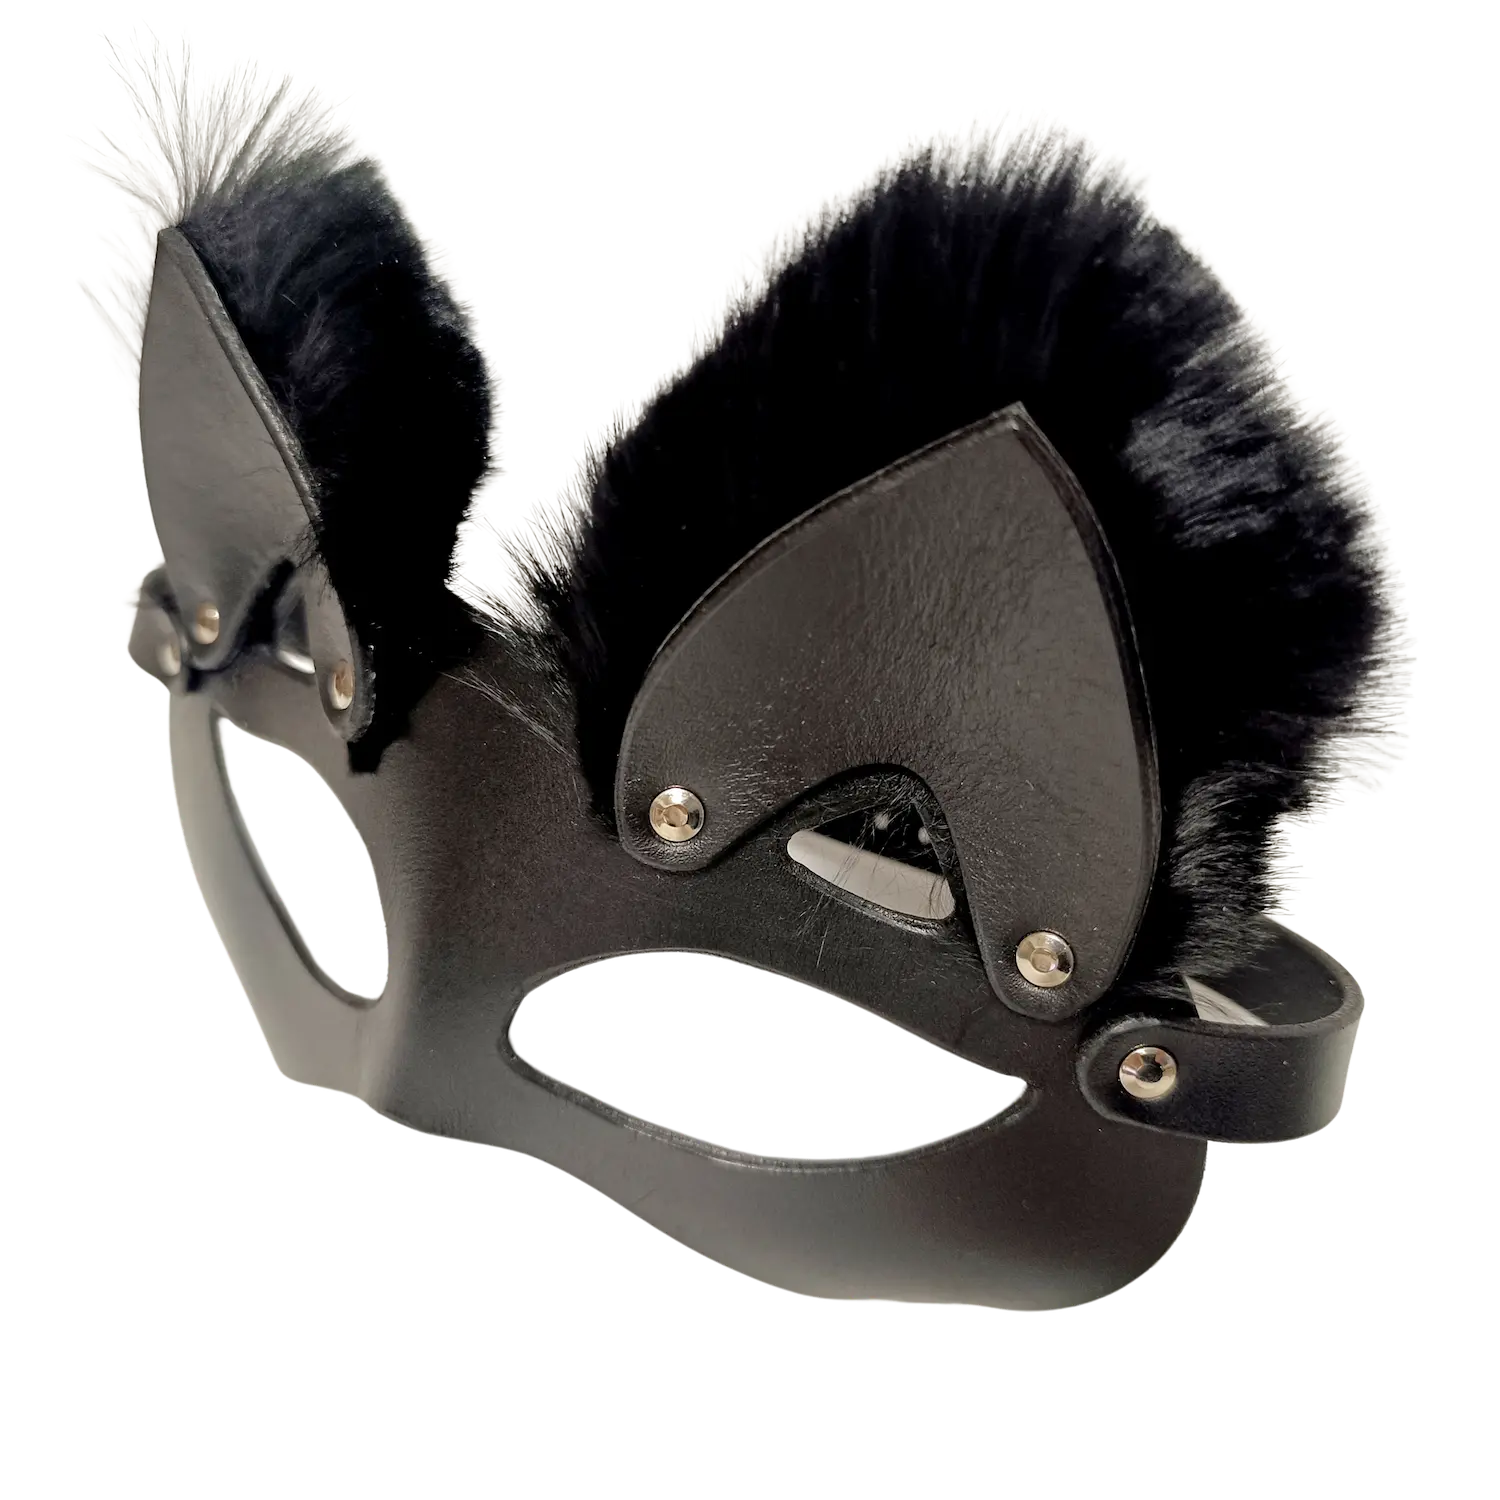 Černá kožená maska kočky s chloupky z králičí kožky. Cena 1400 Kč